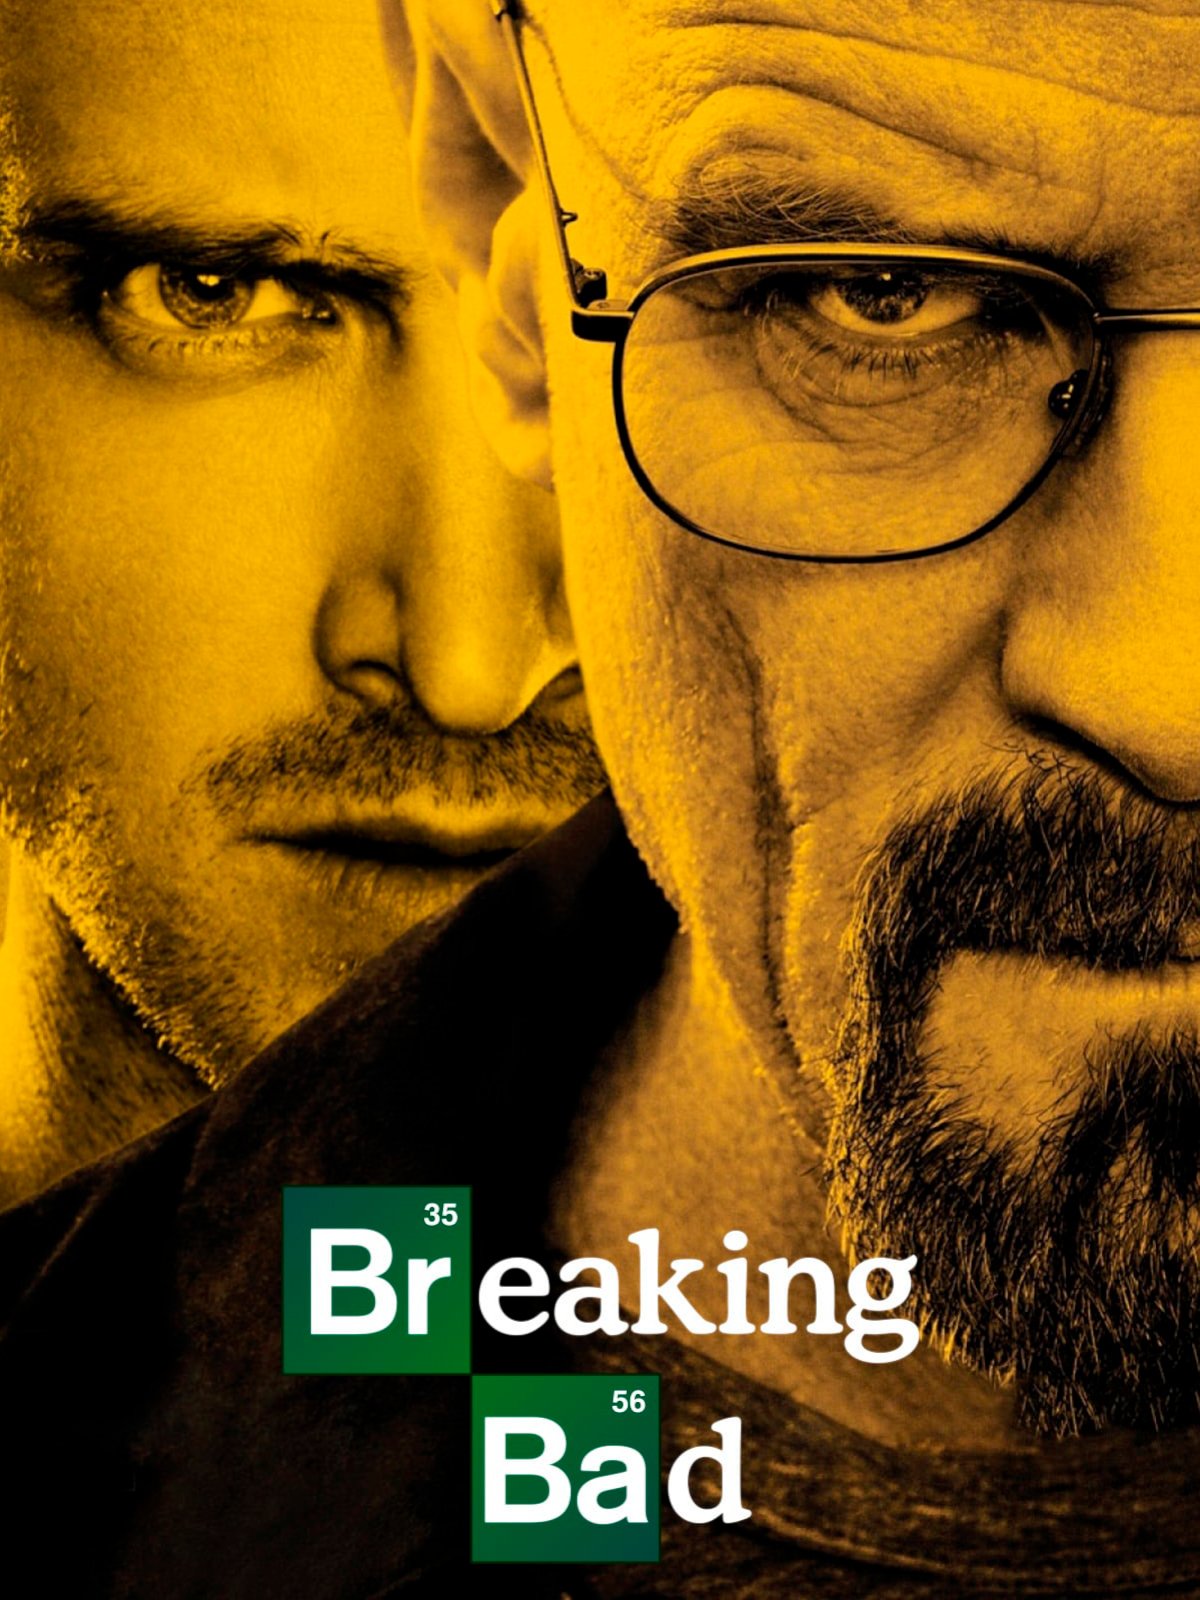 Cartel Breaking Bad - Poster 5 sobre un total de 10 - SensaCine.com